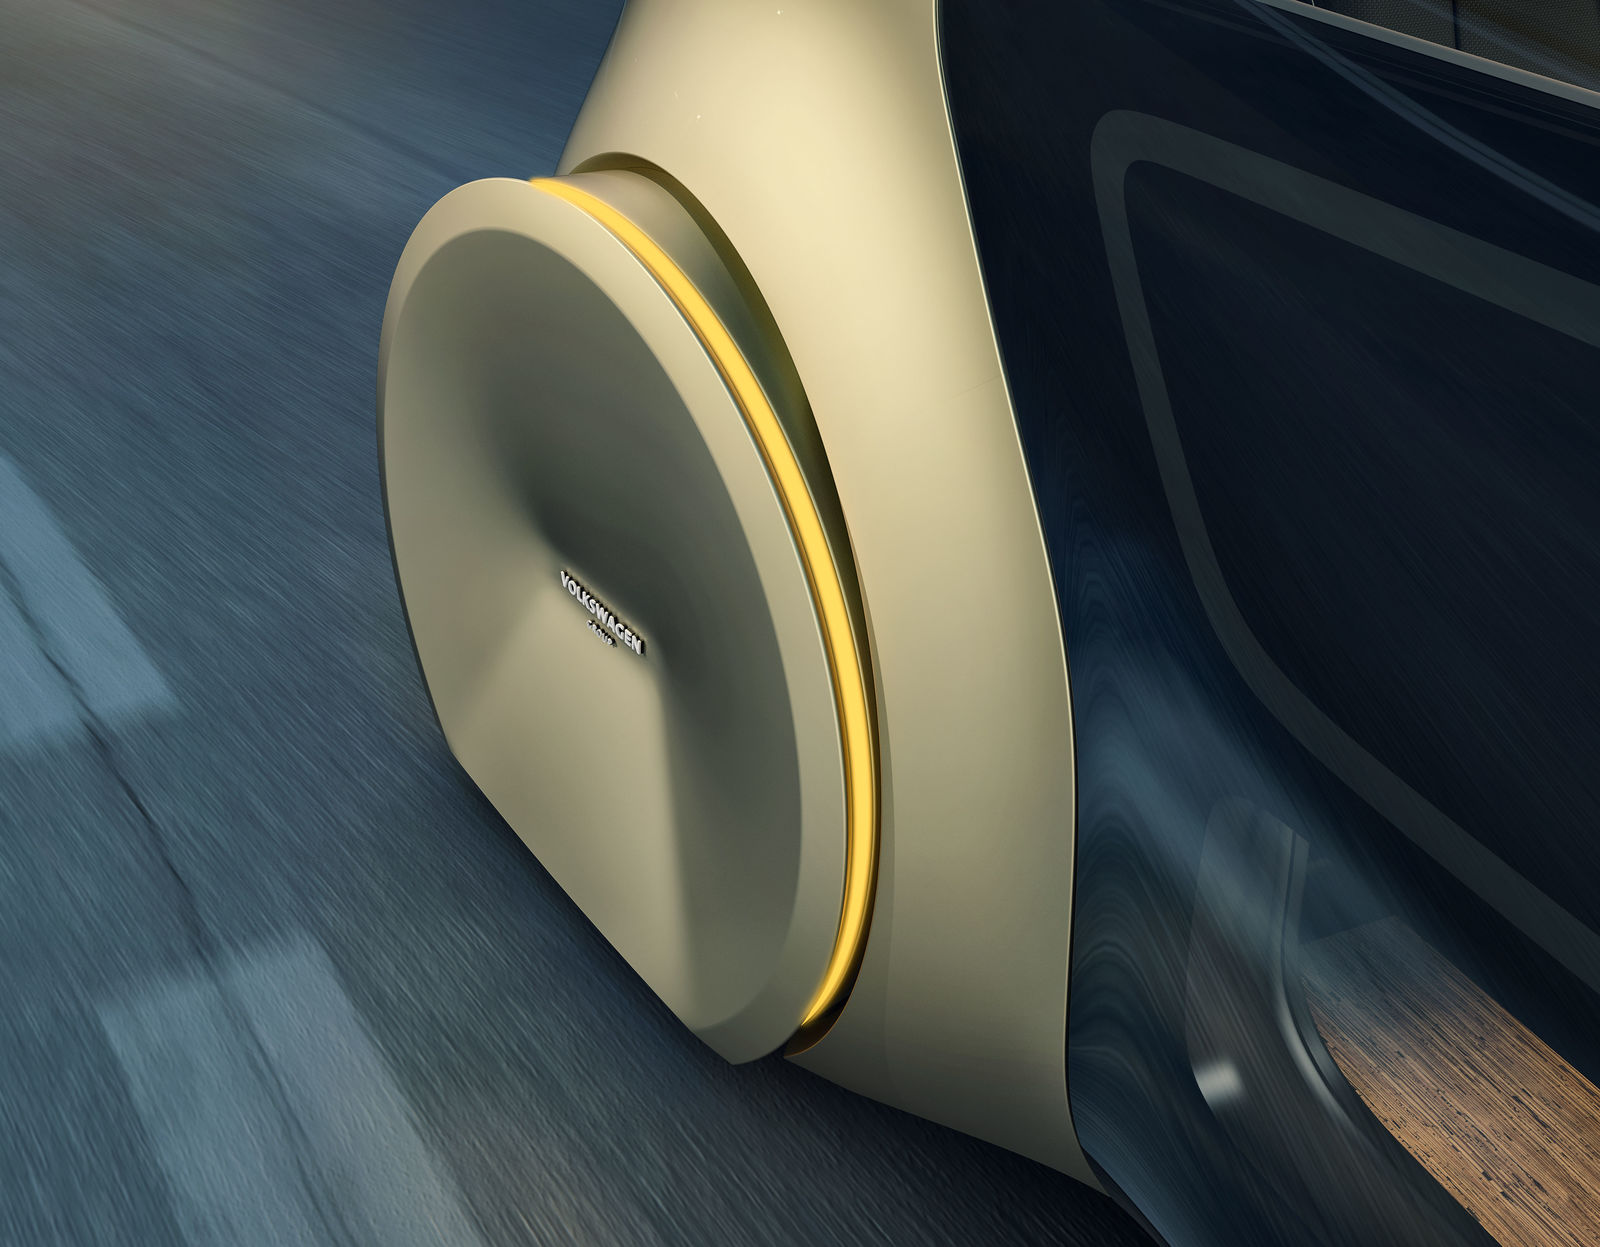 SEDRIC – Die abgedeckten Räder dienen der Sicherheit und unterstreichen die futuristische Erscheinung des Konzeptfahrzeugs.